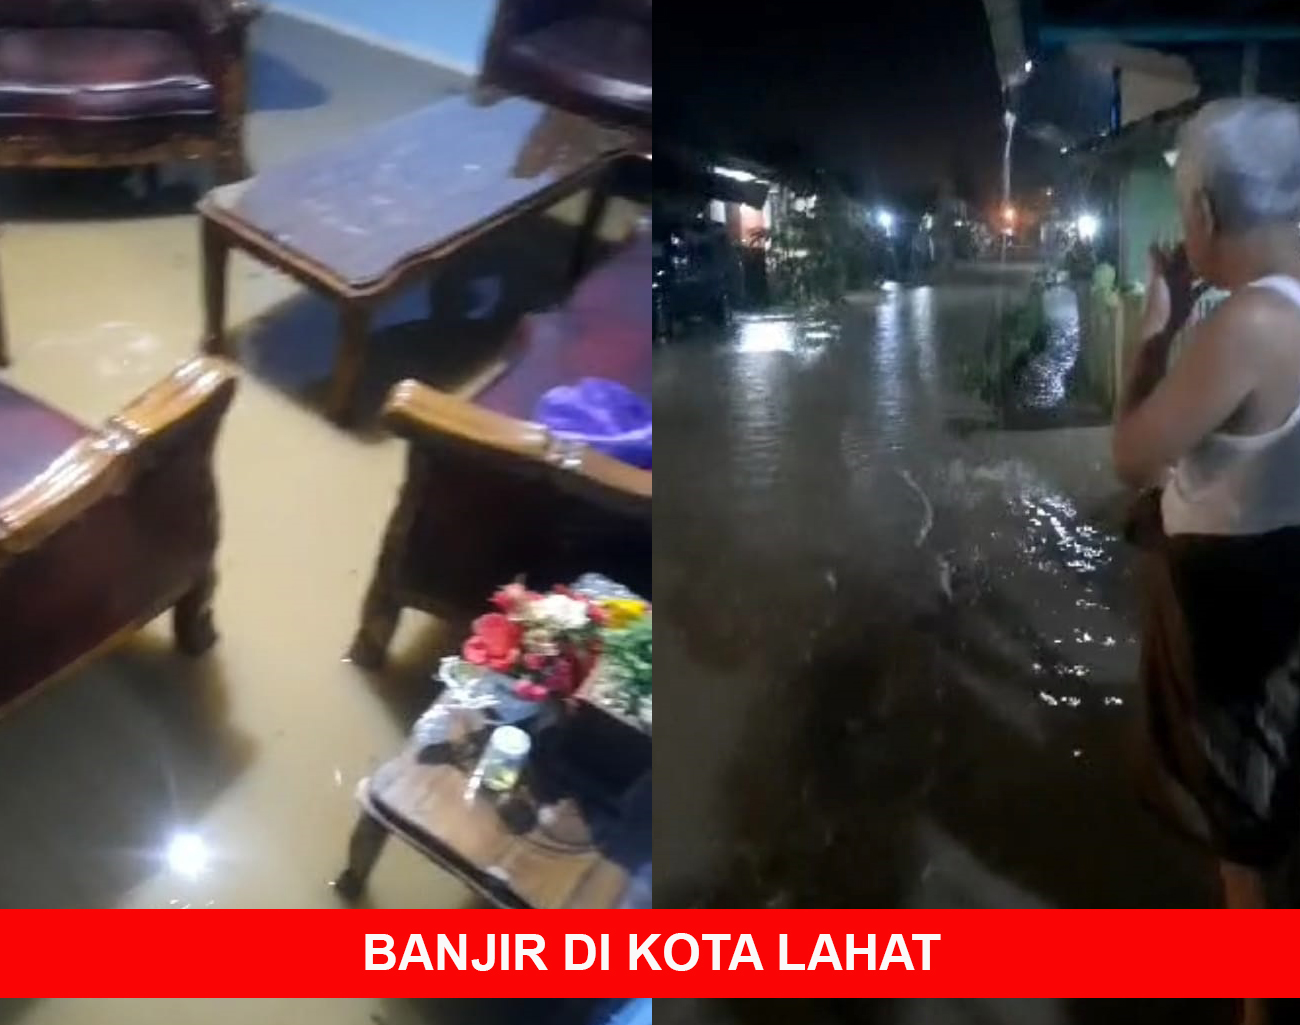 Rumah Warga Kota Lahat Ada yang Masuk Air, Hujan Deras Semalam